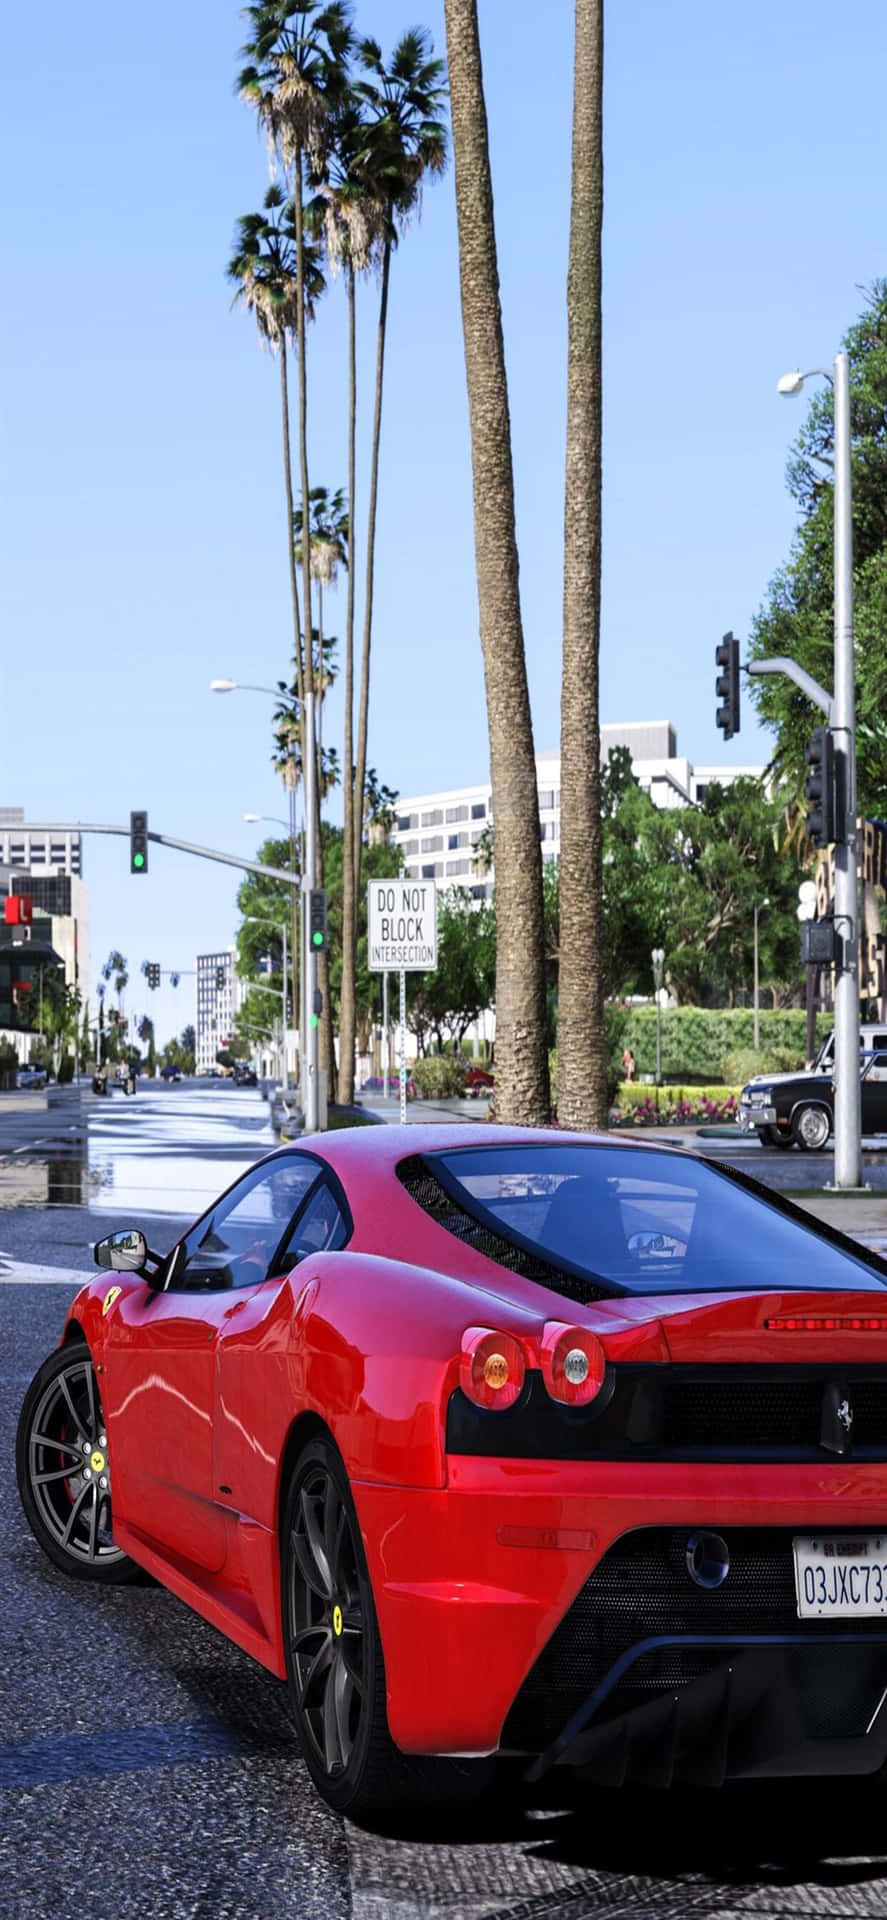 Iphonexs Max Bakgrundsbild Med Grand Theft Auto V Och En Röd Corvette.